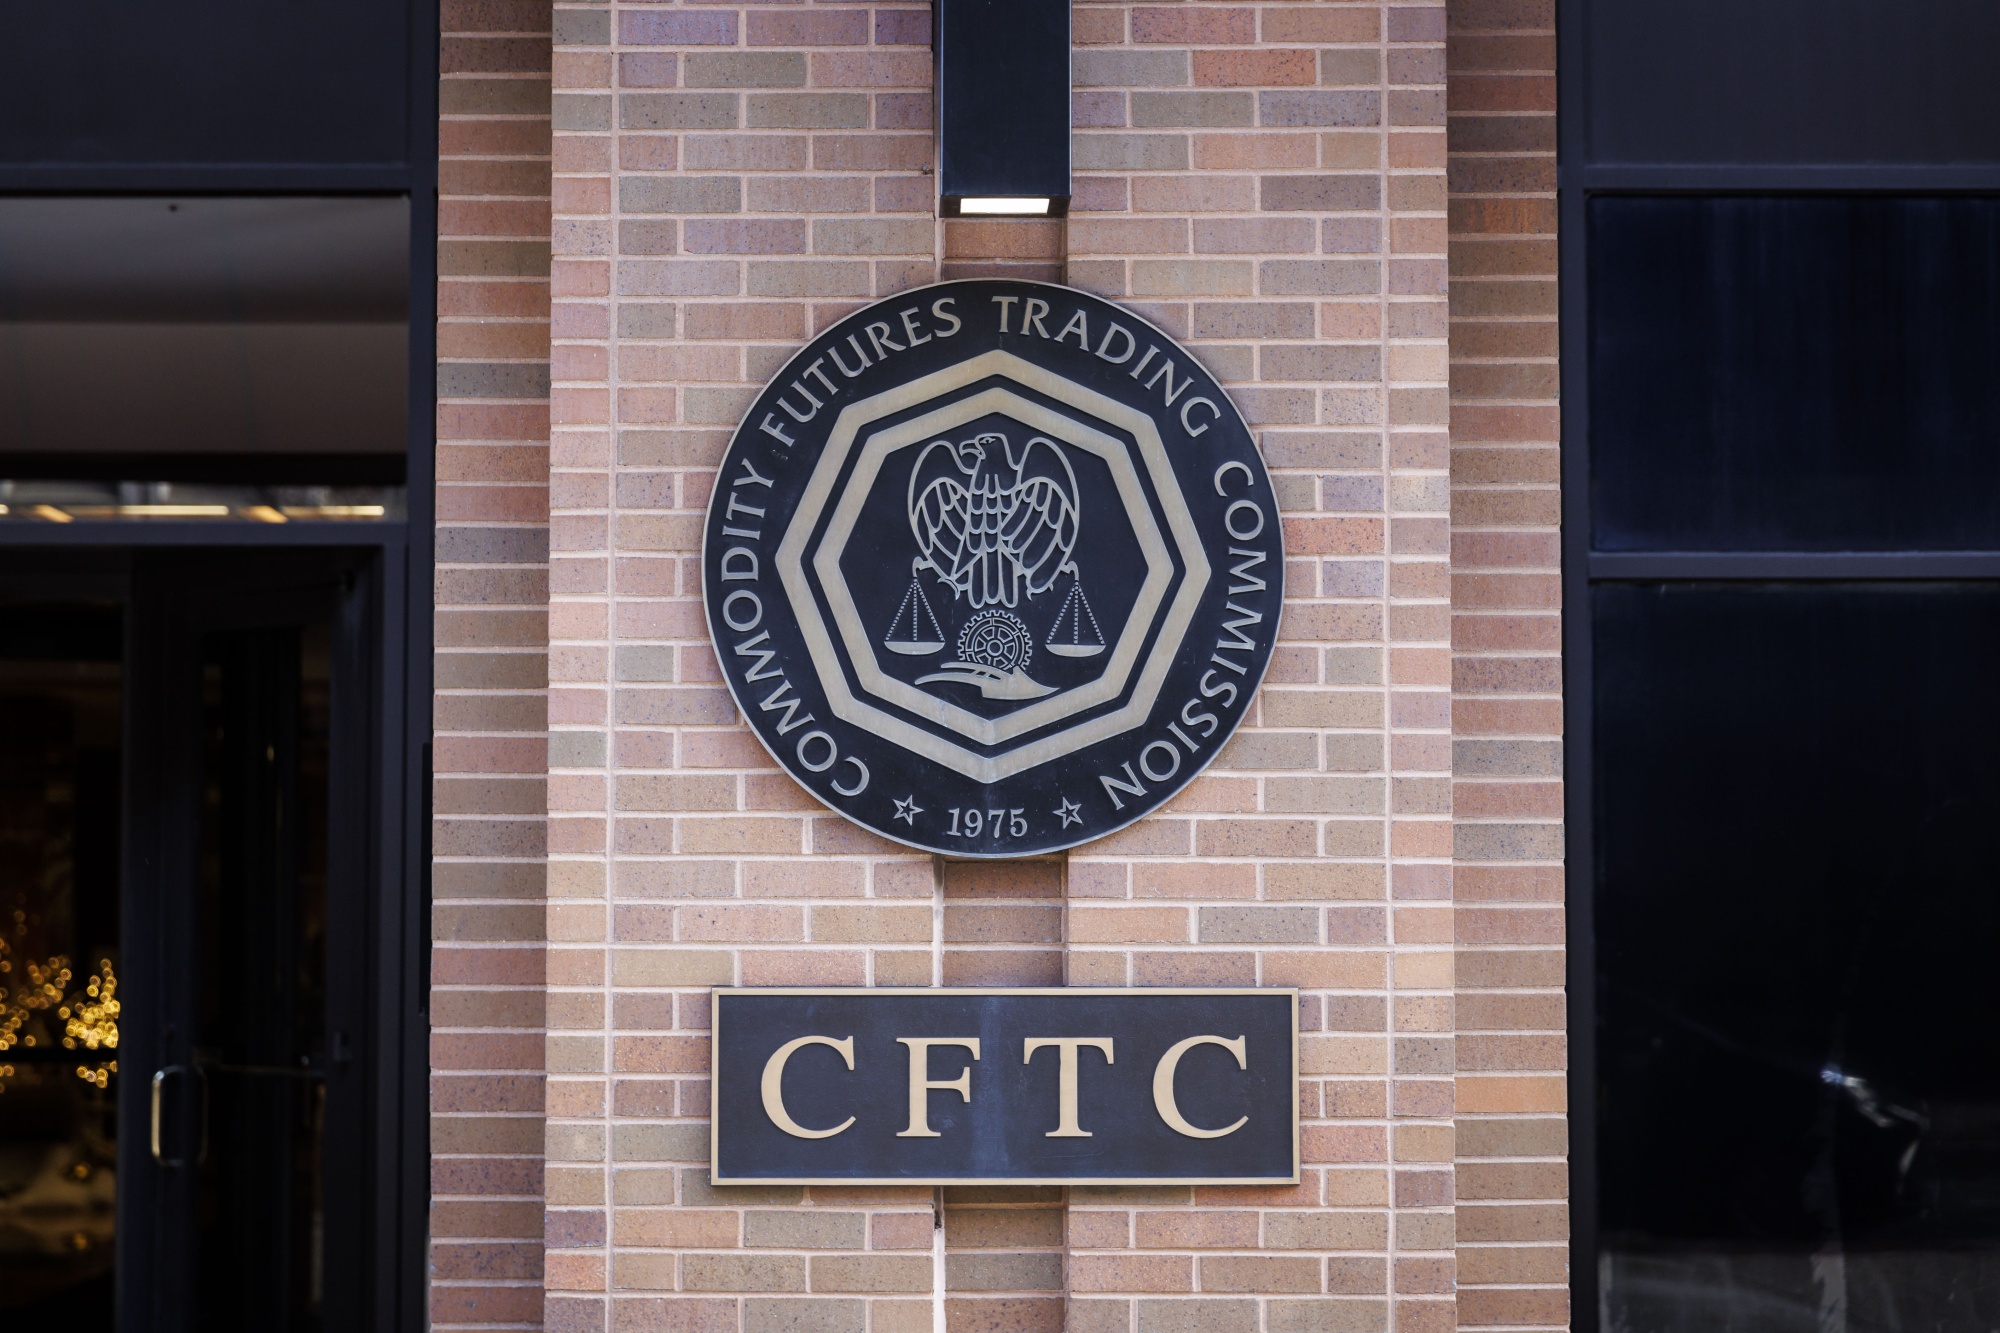 هيئة تداول السلع الآجلة (CFTC) تتخذ إجراءات ضد مخطط فوركس المزعوم بقيمة 5 ملايين دولار